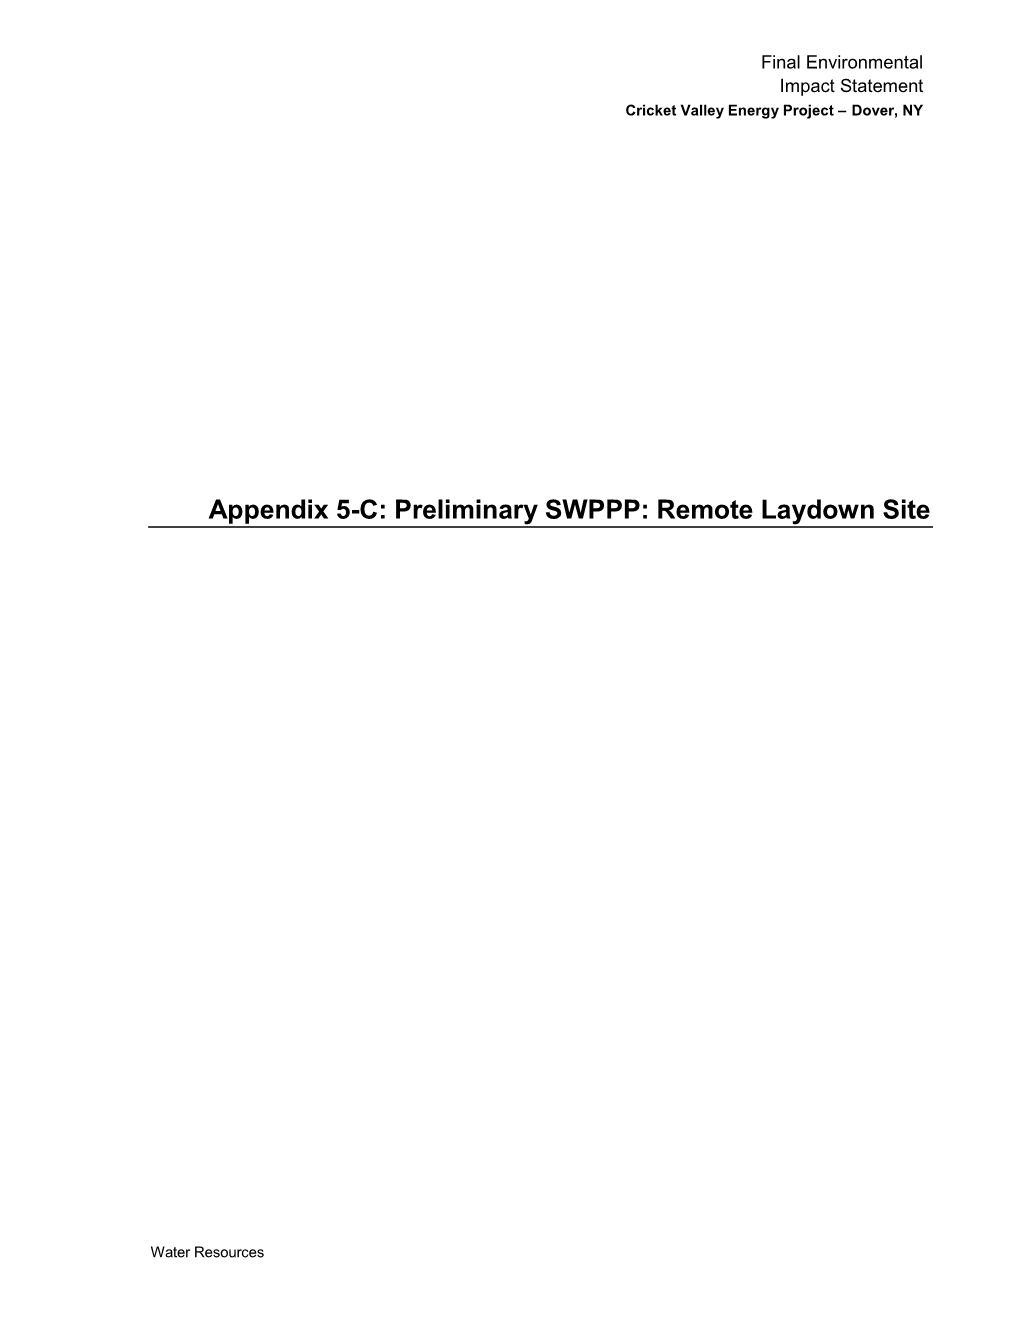 Appendix 5-C: Preliminary SWPPP: Remote Laydown Site